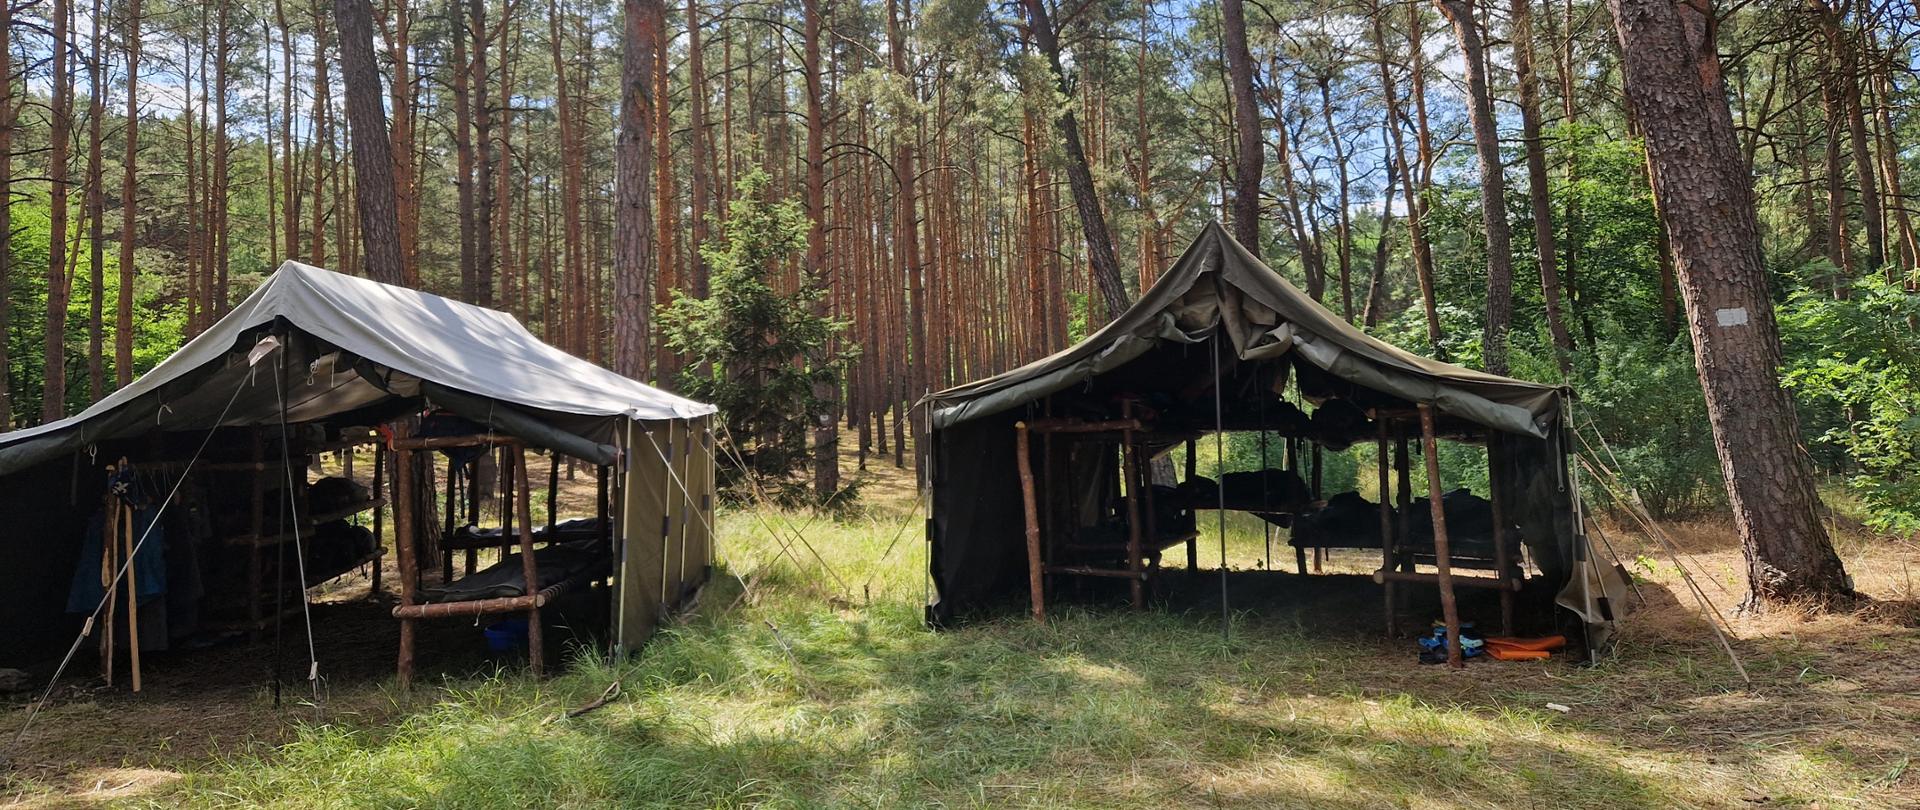 Zdjęcie przedstawia 2 namioty harcerskie znajdujące się wśród drzew iglastych w lesie.